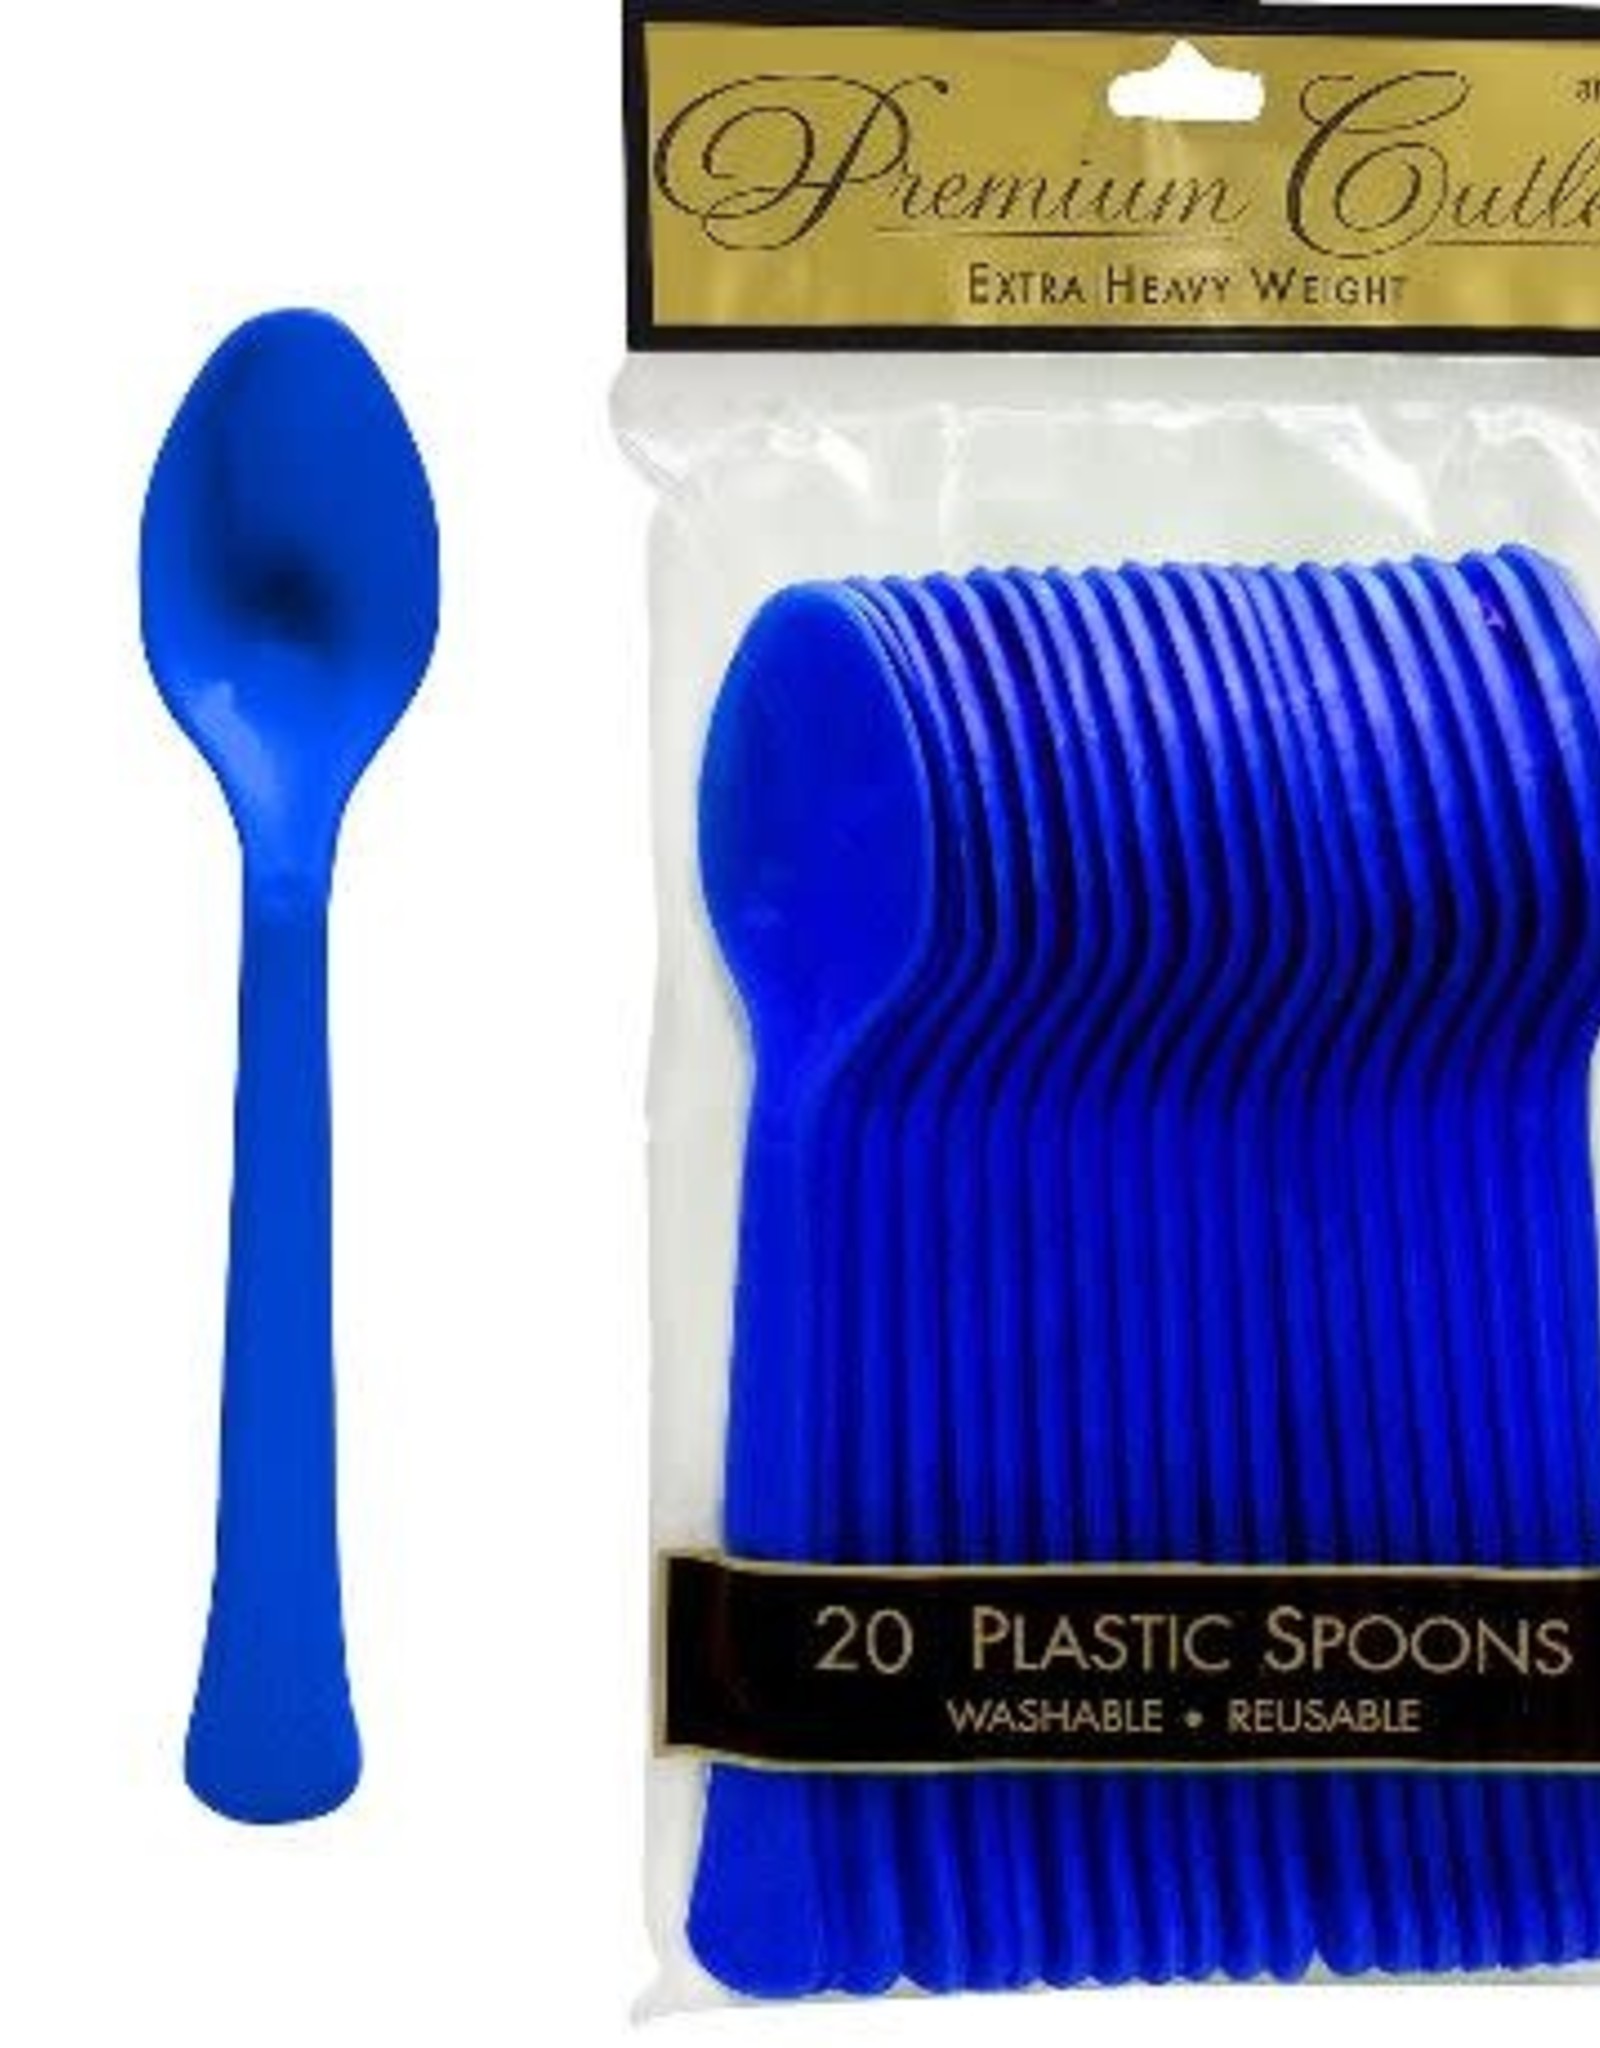 Royal Blue Plastic Spoons